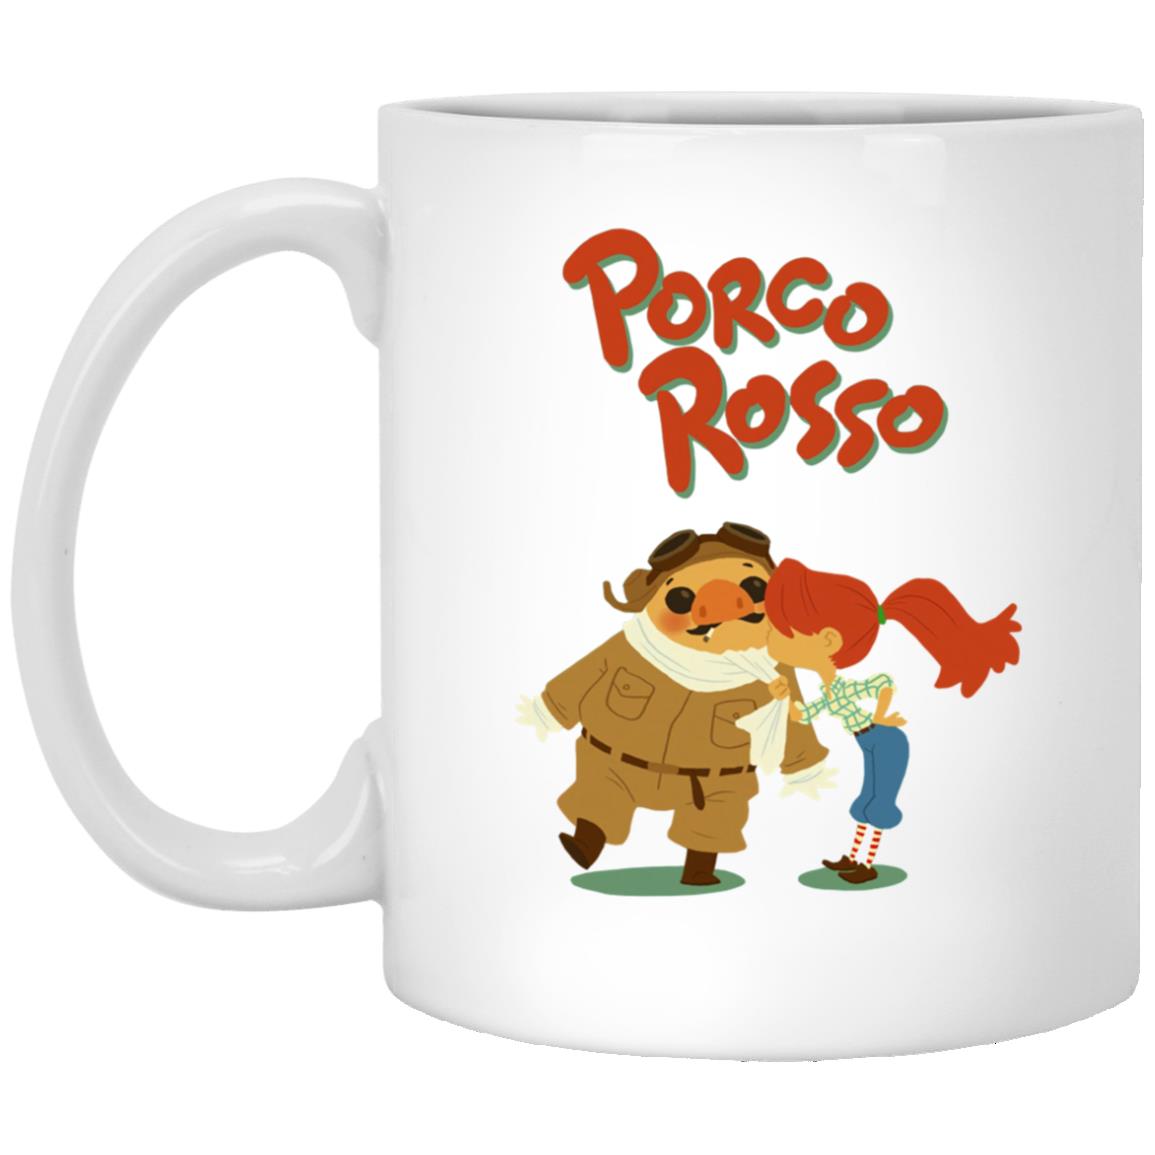 Porco Rosso – The Kiss Mug